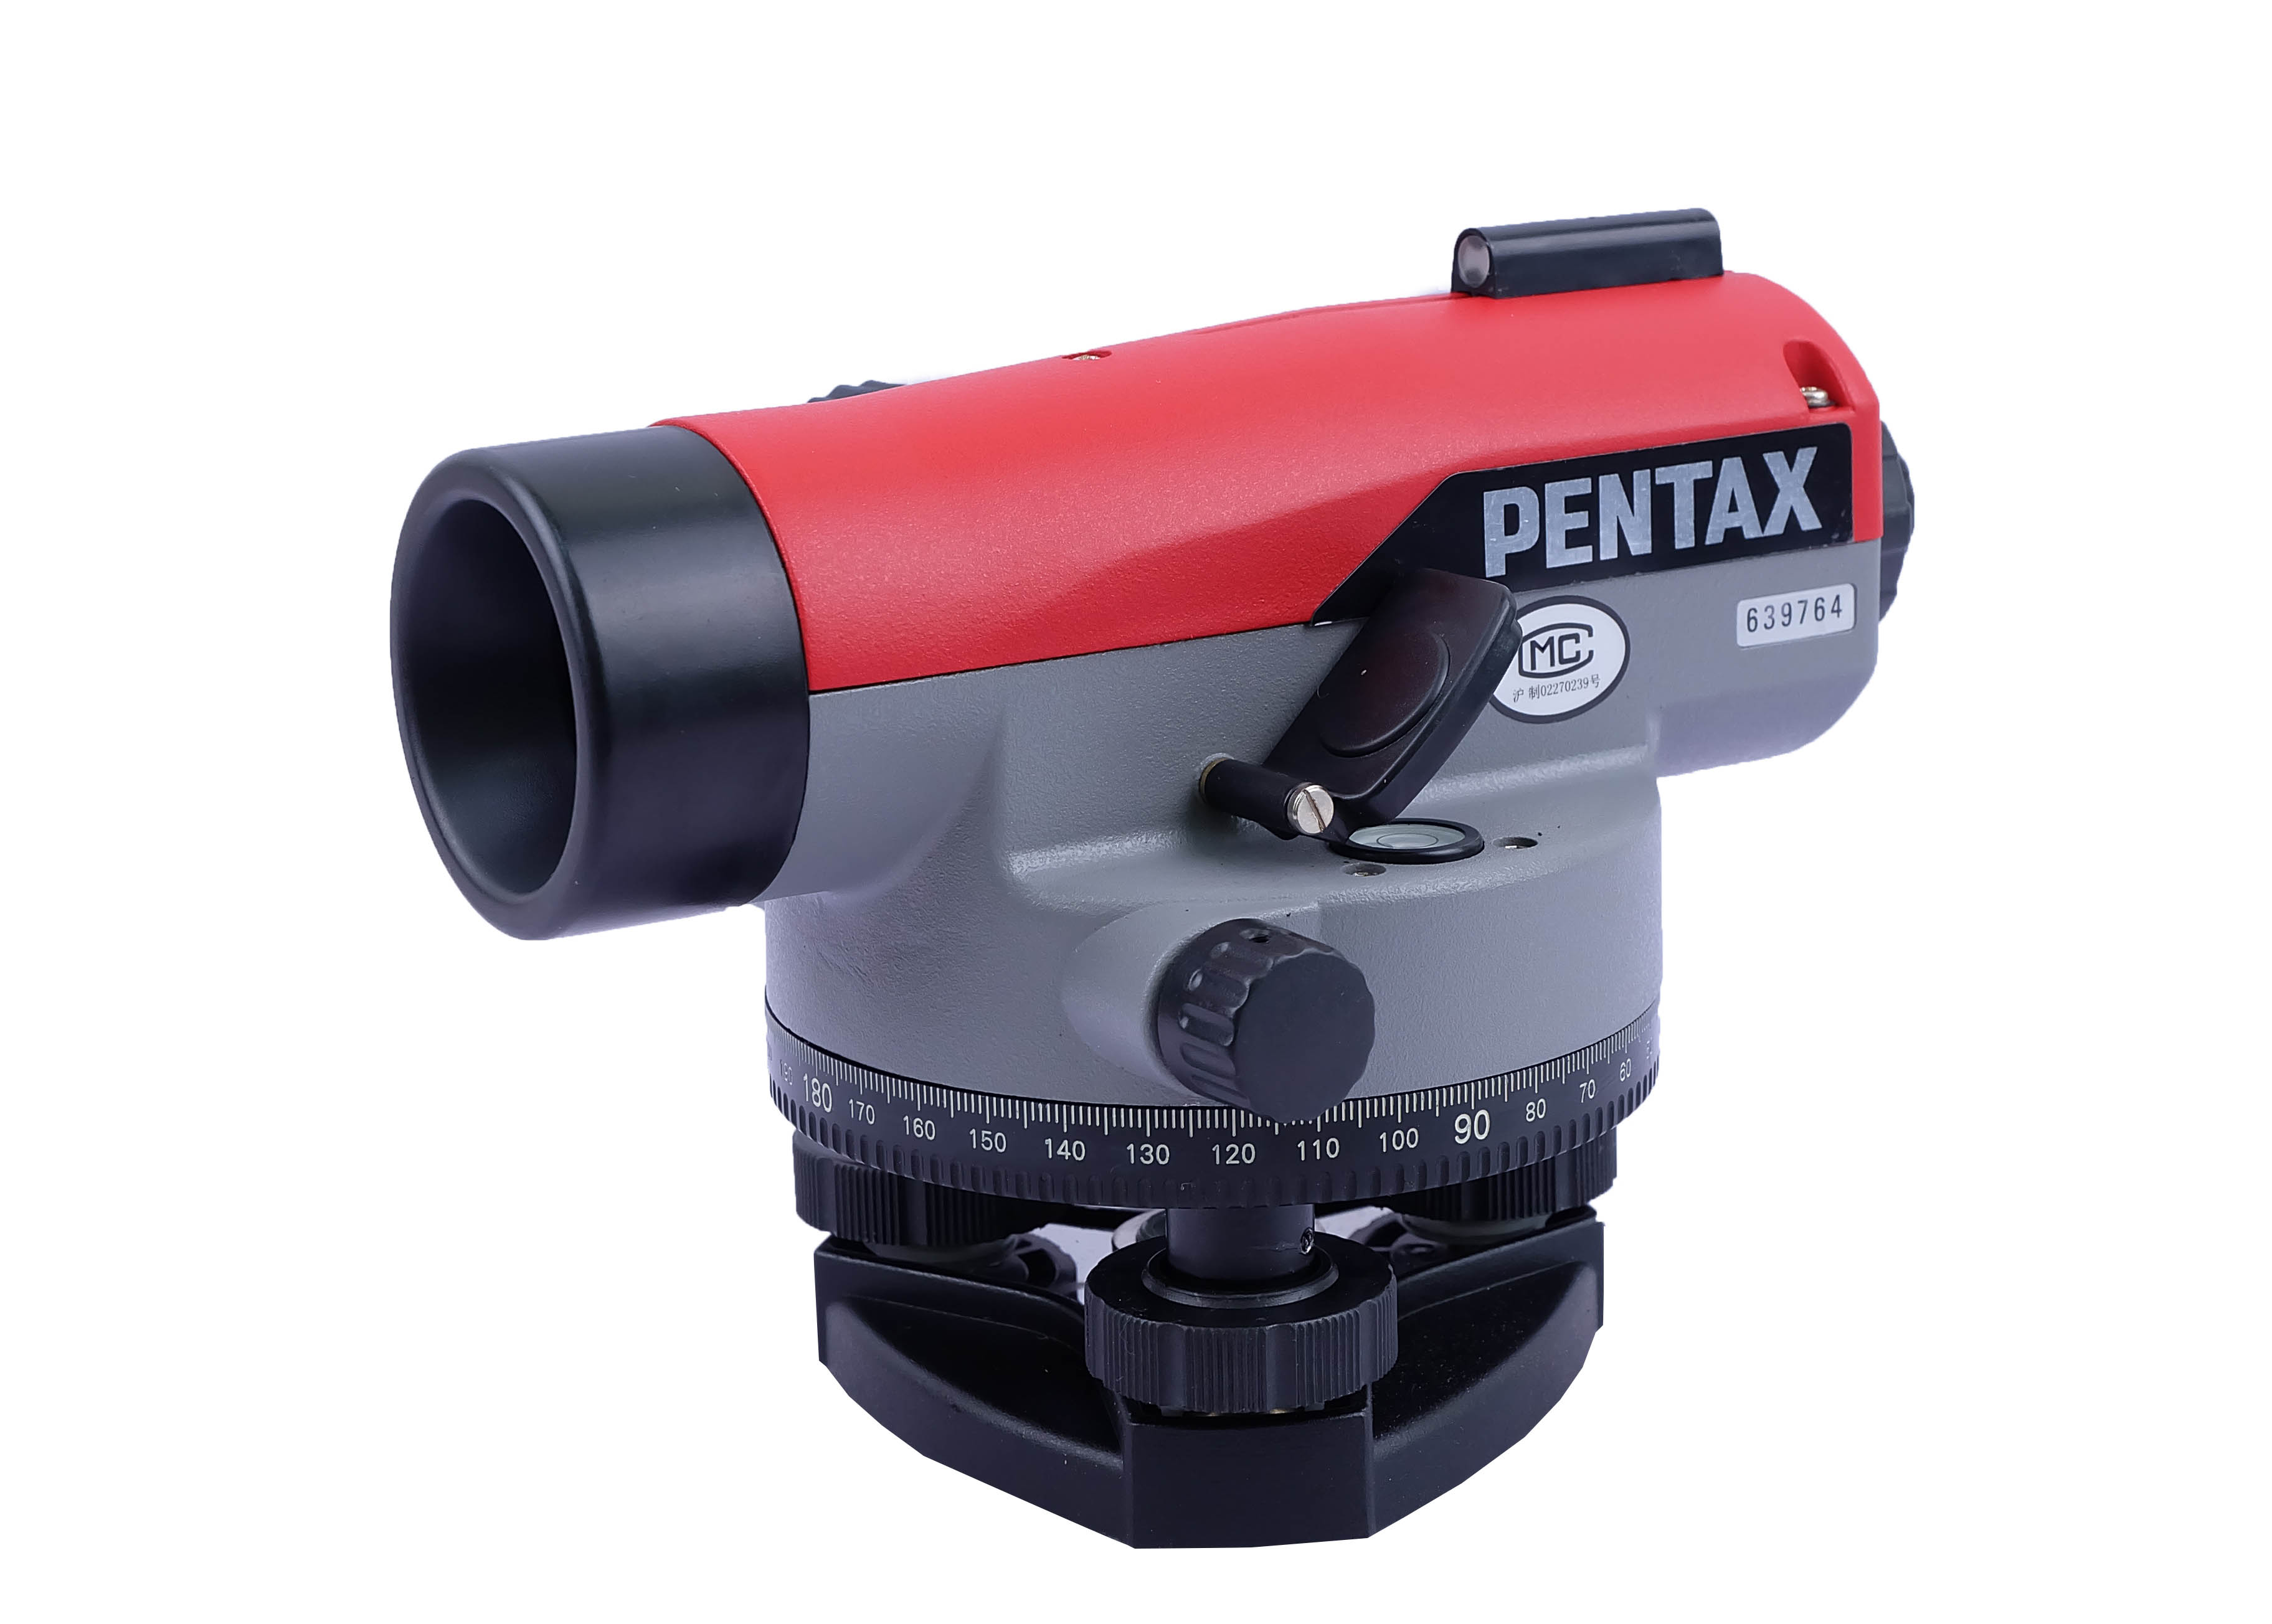 กล้องระดับ PENTAX AP-228 กำลังขยาย 28 เท่า